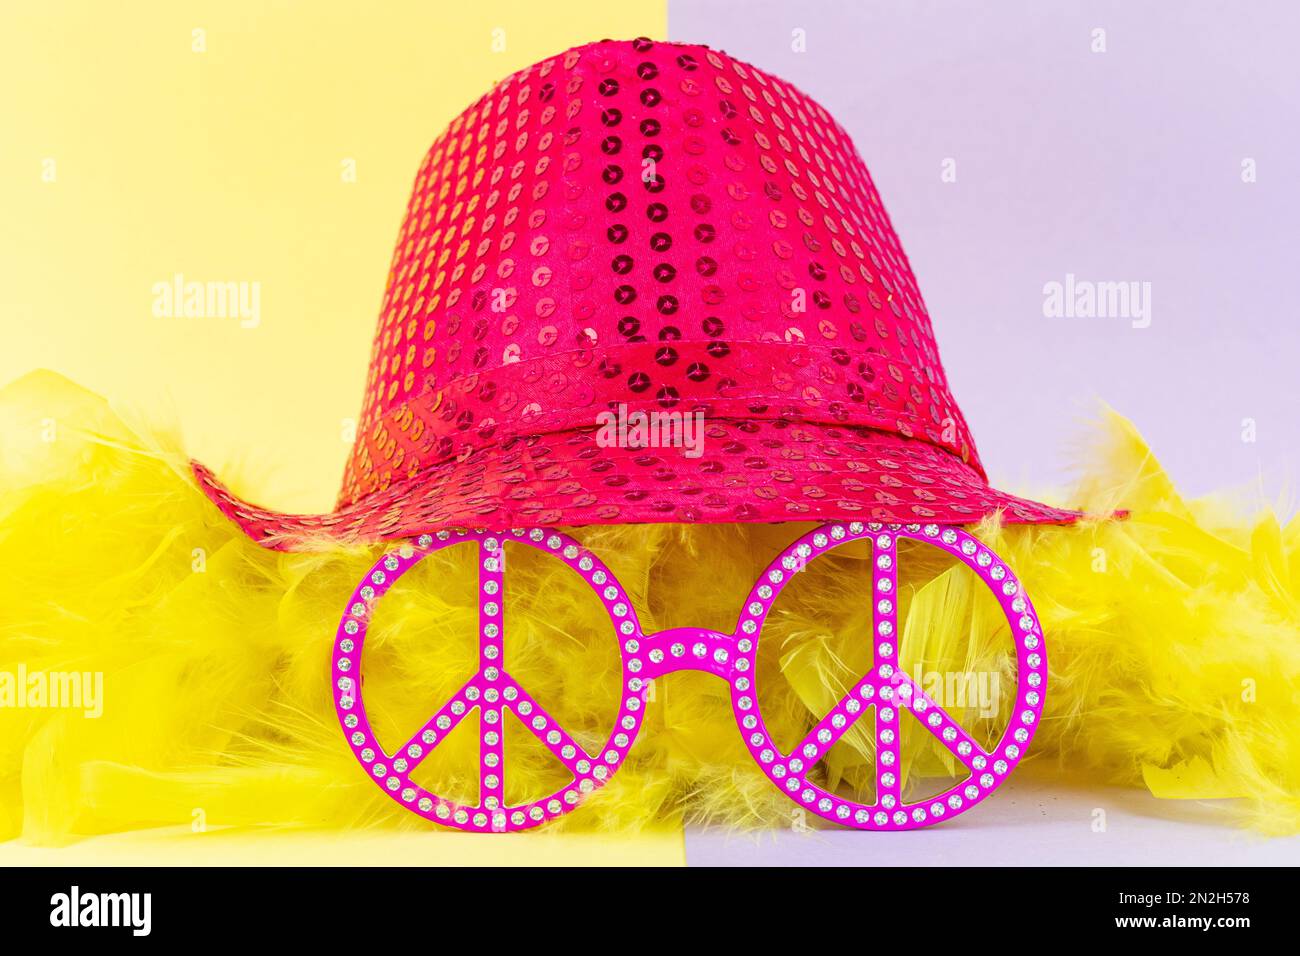 Karnevalskostüm-Accessoires isoliert mit farbigem Hintergrund. Pinkfarbene Mütze mit Pailletten und grüner Brille, roter Nase, gelben Federn und farbigen Bächen Stockfoto